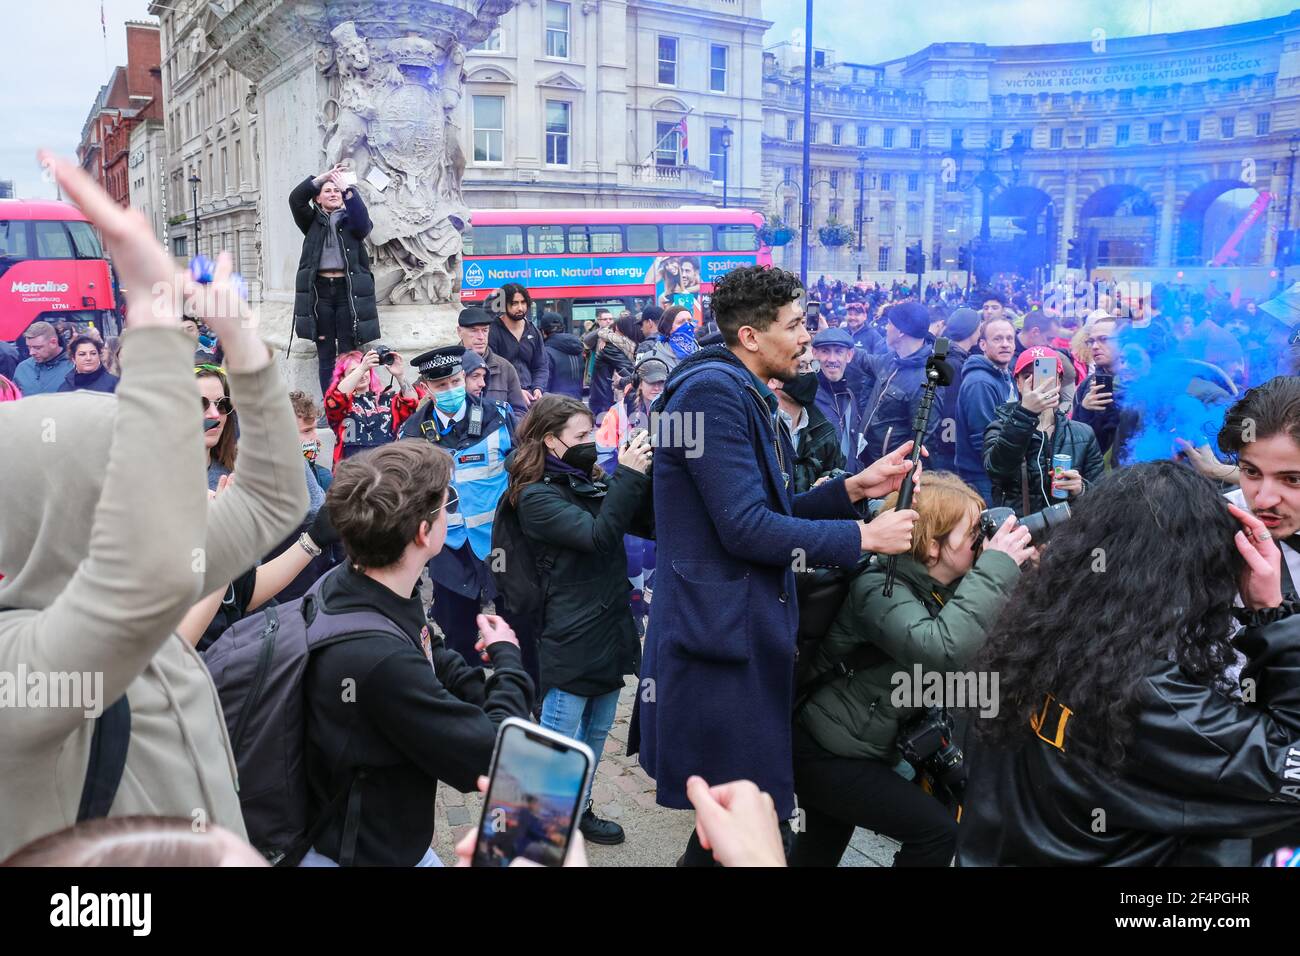 Londres, Royaume-Uni. 20 mars 2021. Manifestation anti-verrouillage à Trafalgar Square, dans le centre de Londres. Crédit: Waldemar Sikora Banque D'Images